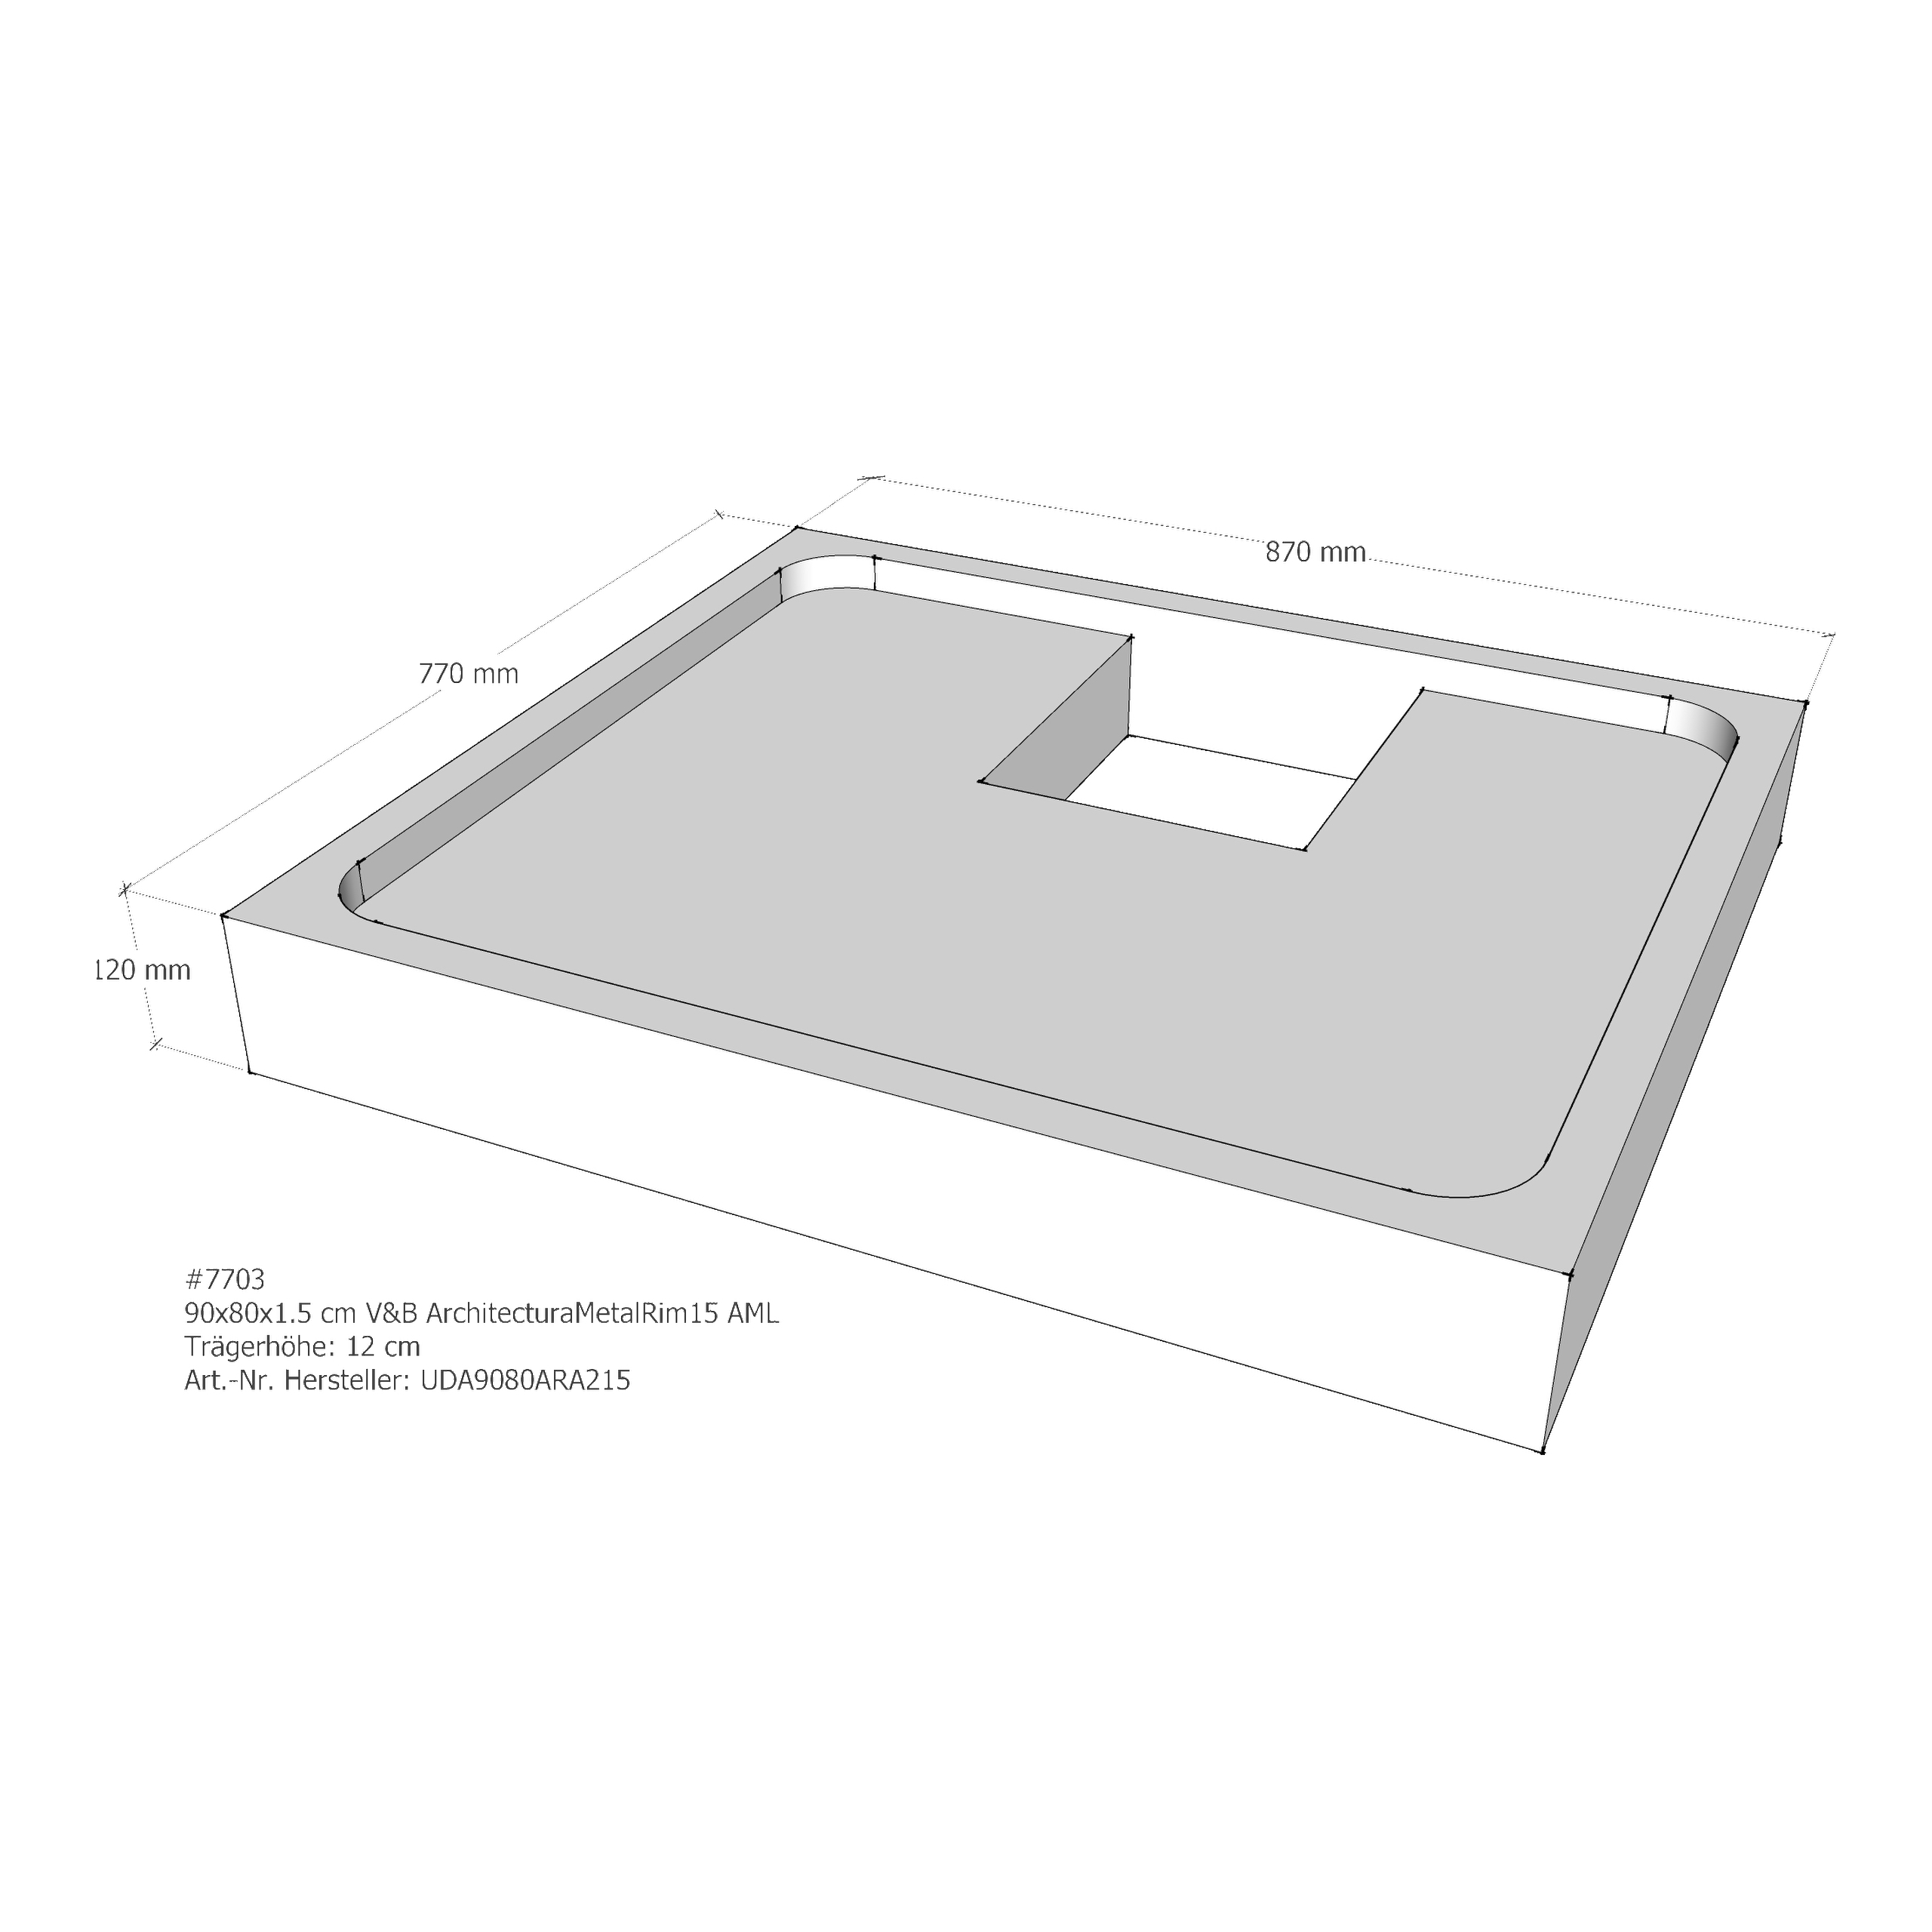 Duschwannenträger für Villeroy & Boch Architectura MetalRim 90 × 80 × 1,5 cm